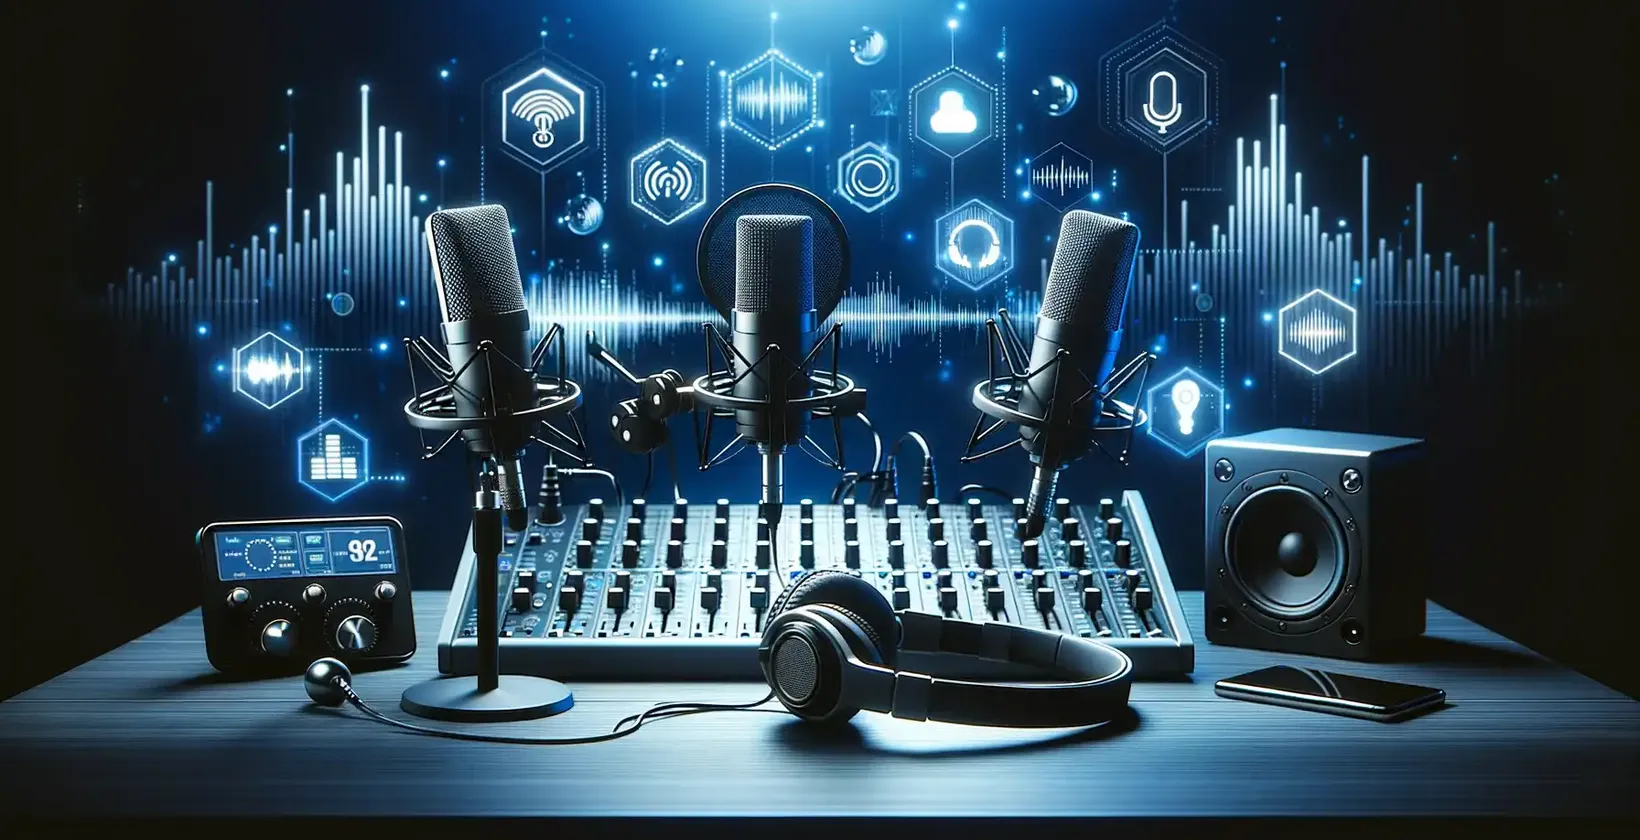 Peralatan audio dan mikrofon diletakkan di atas meja untuk menyalin podcast, strategi untuk menarik lebih ramai pelanggan.